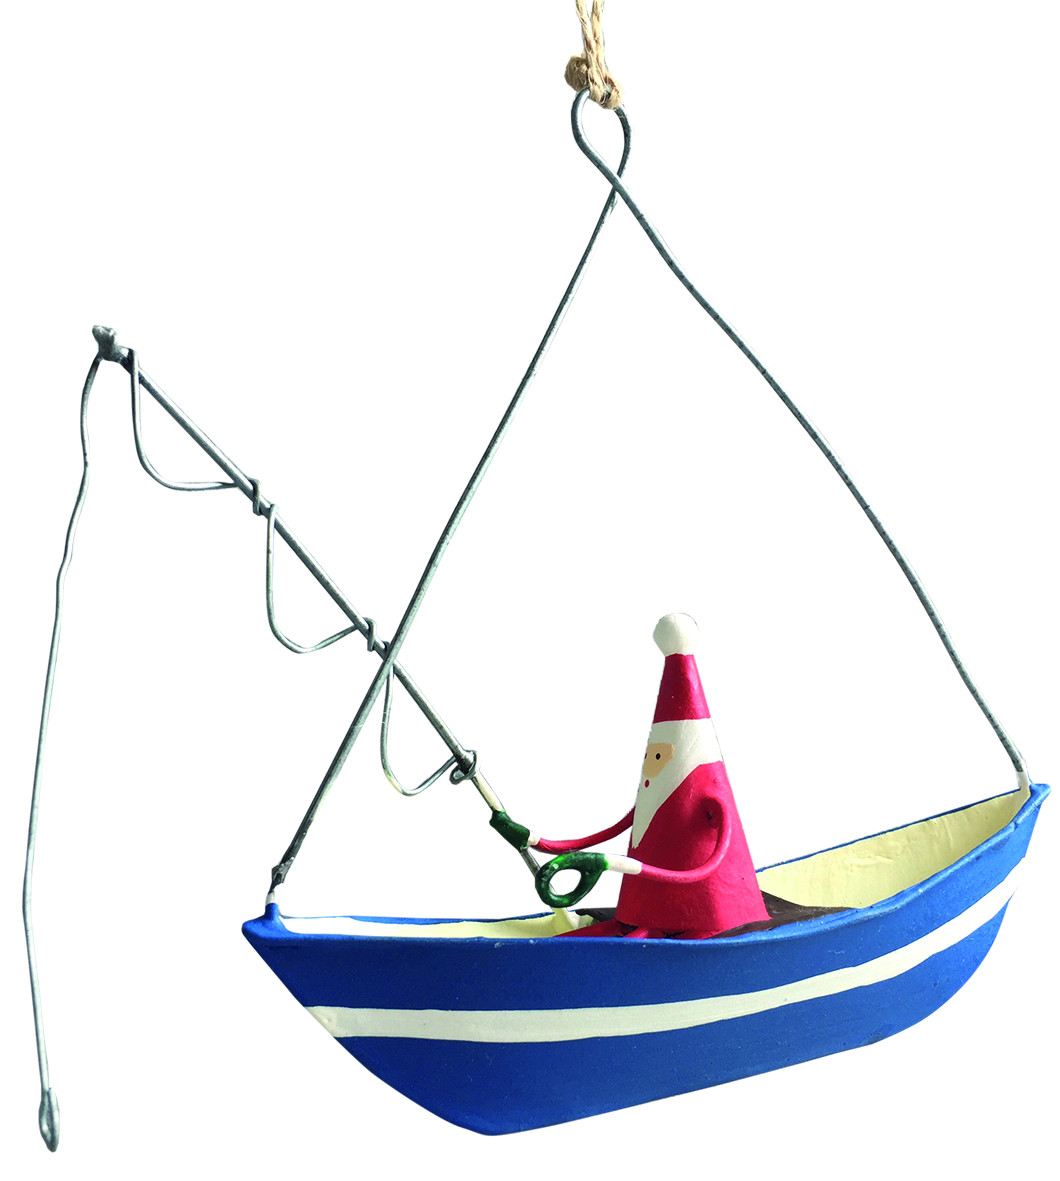 Julemand i blå båd